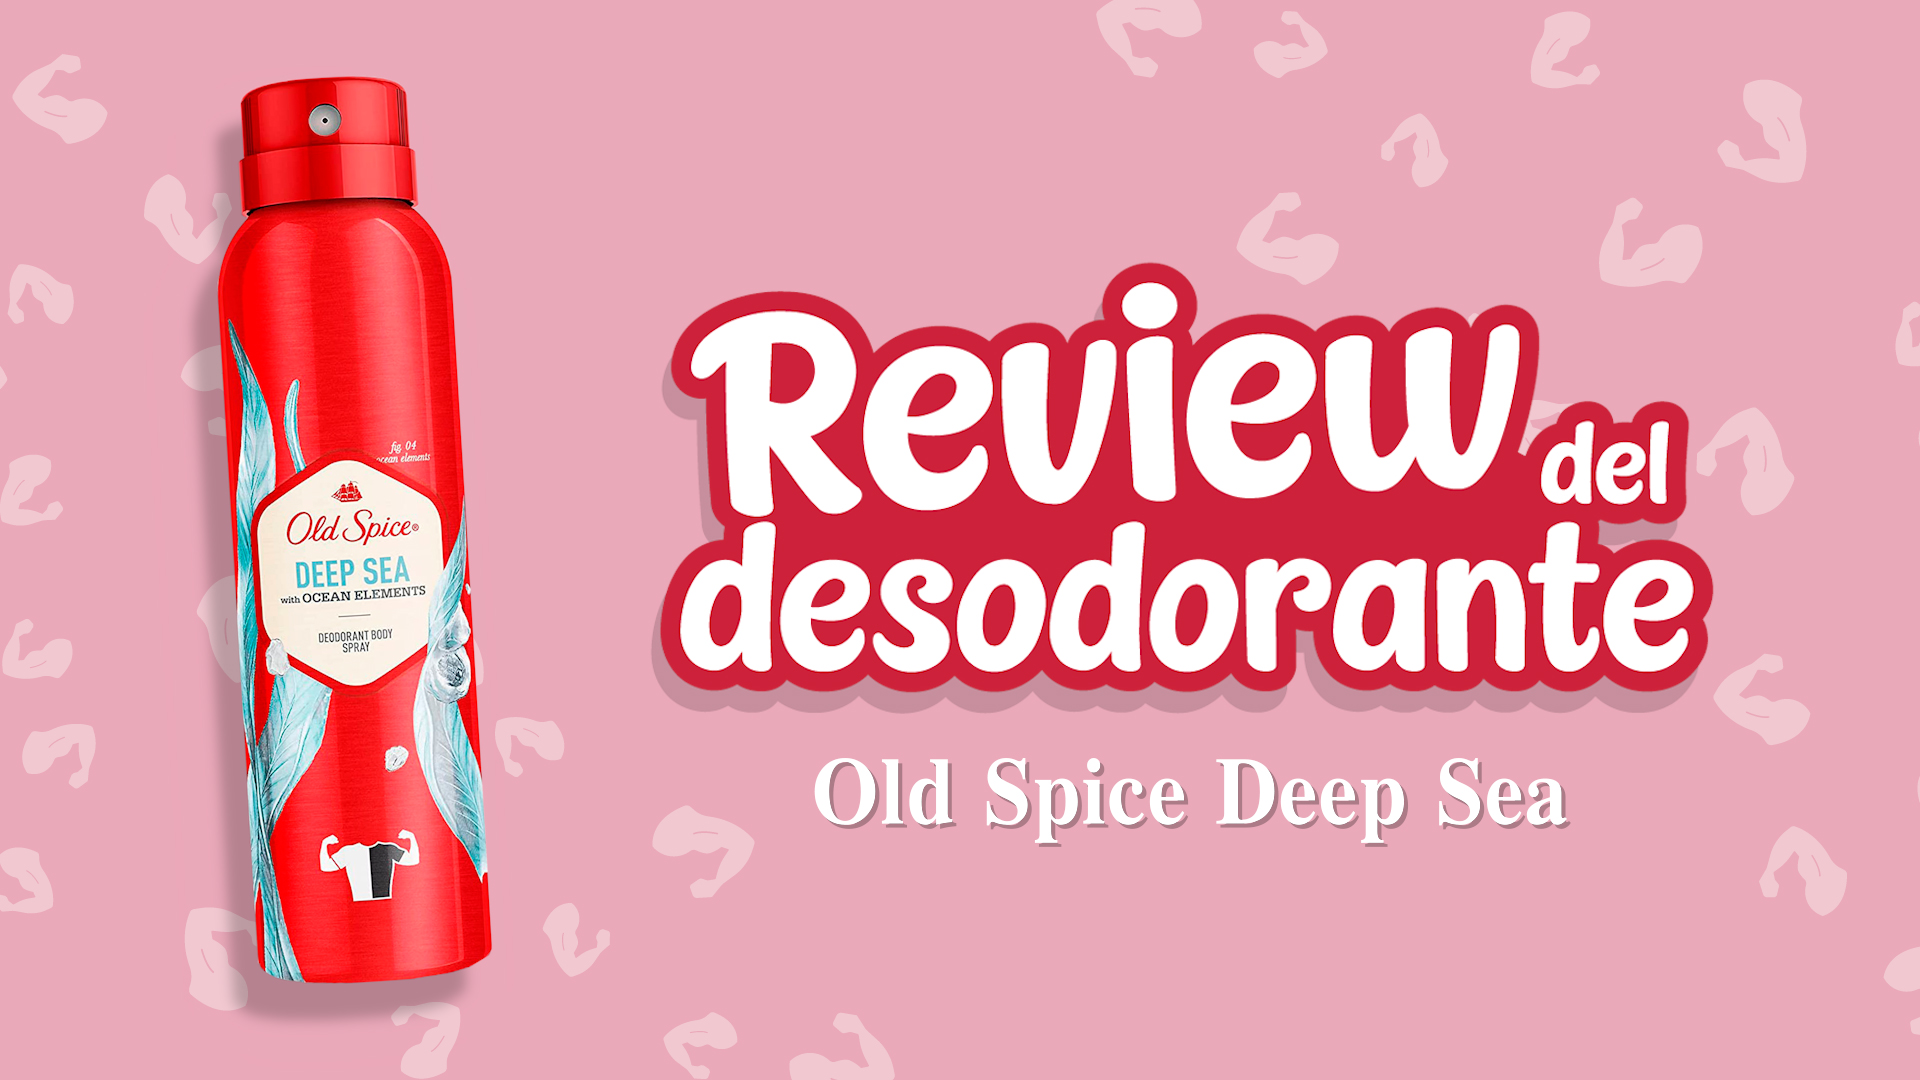 Desodorante Old Spice deep sea